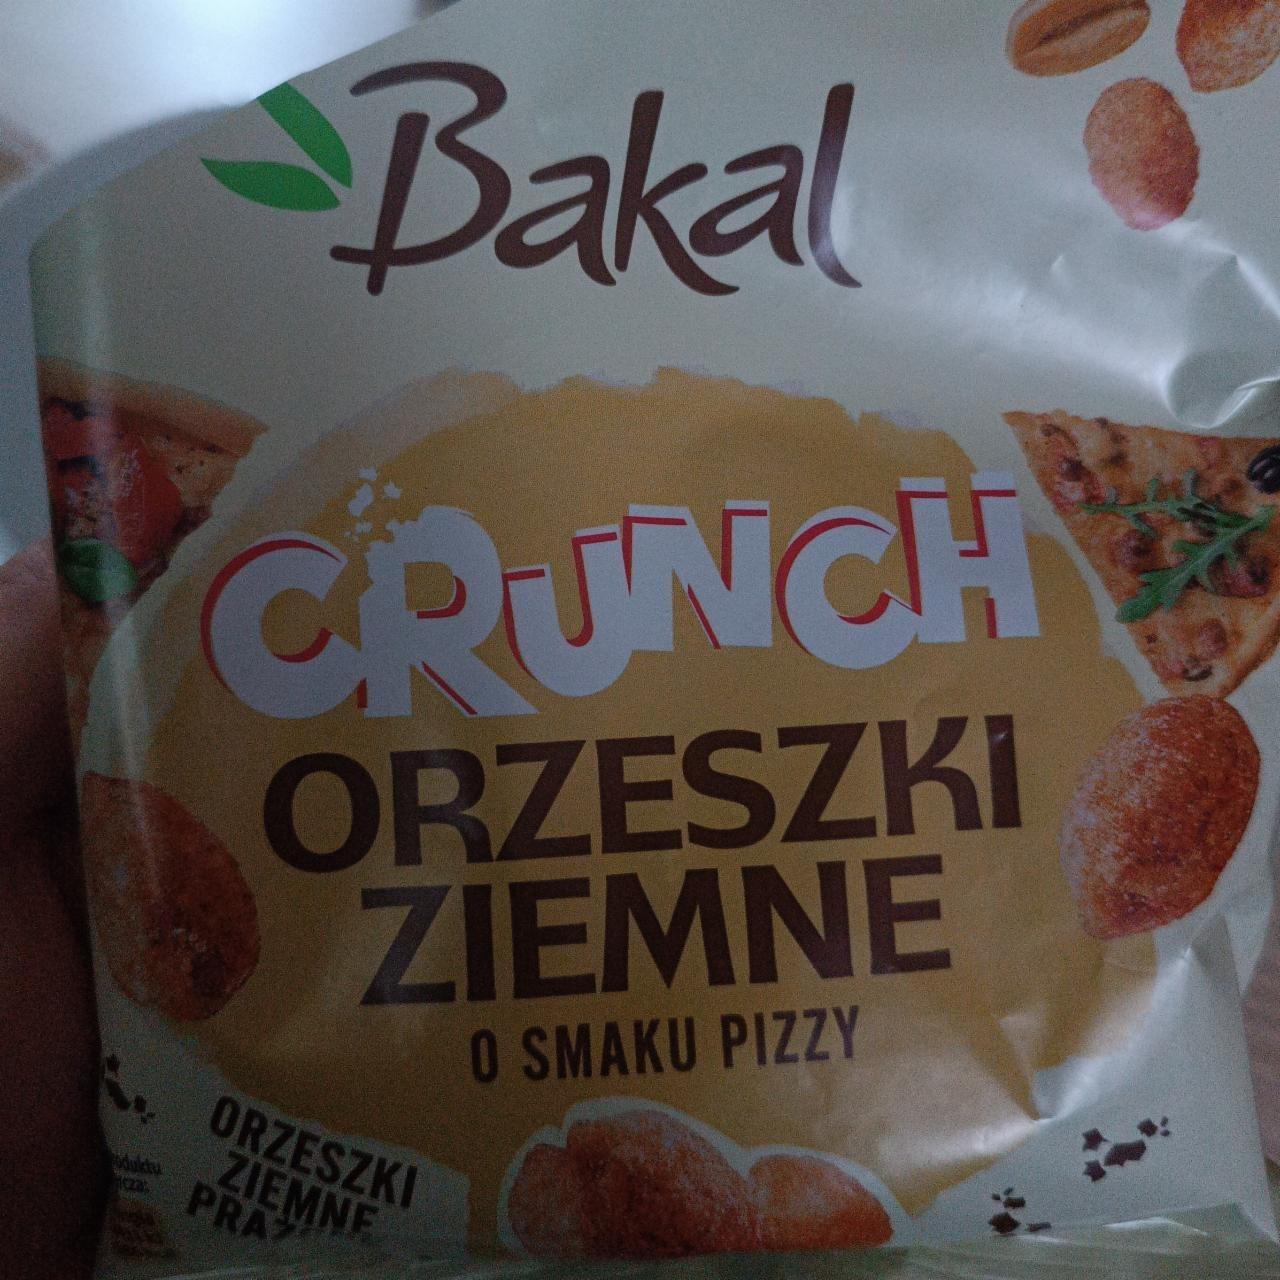 Zdjęcia - Crunch orzeszki ziemne o smaku pizzy Bakal